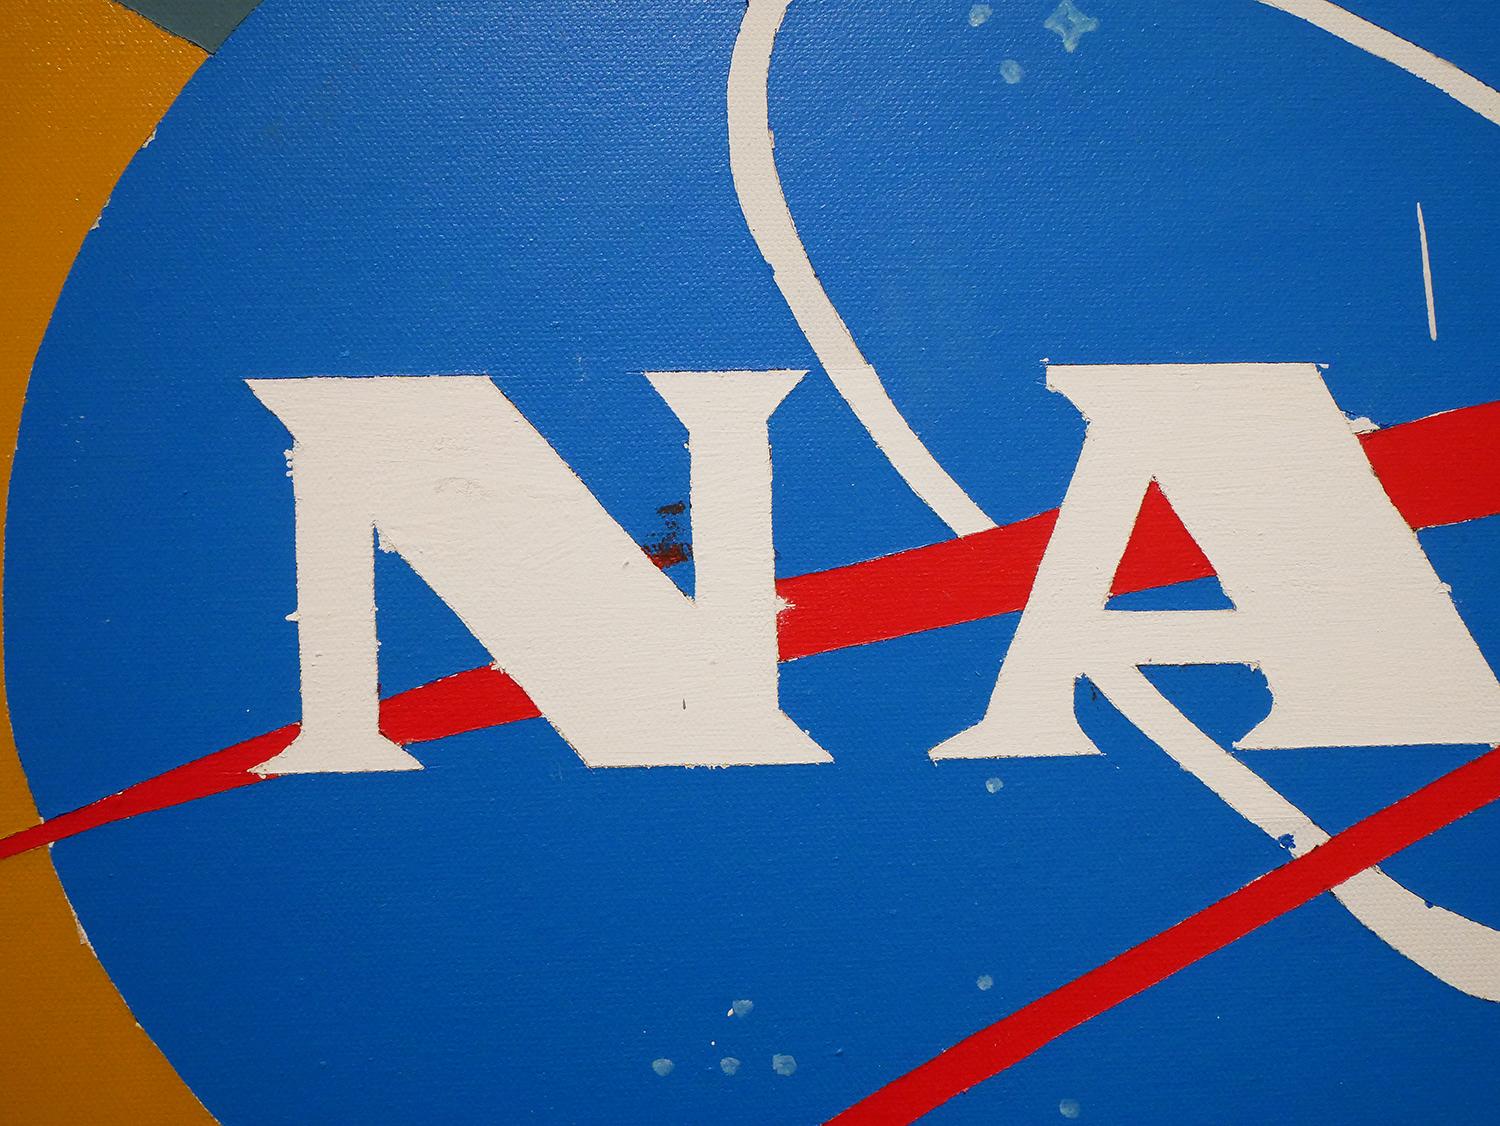 “NASA